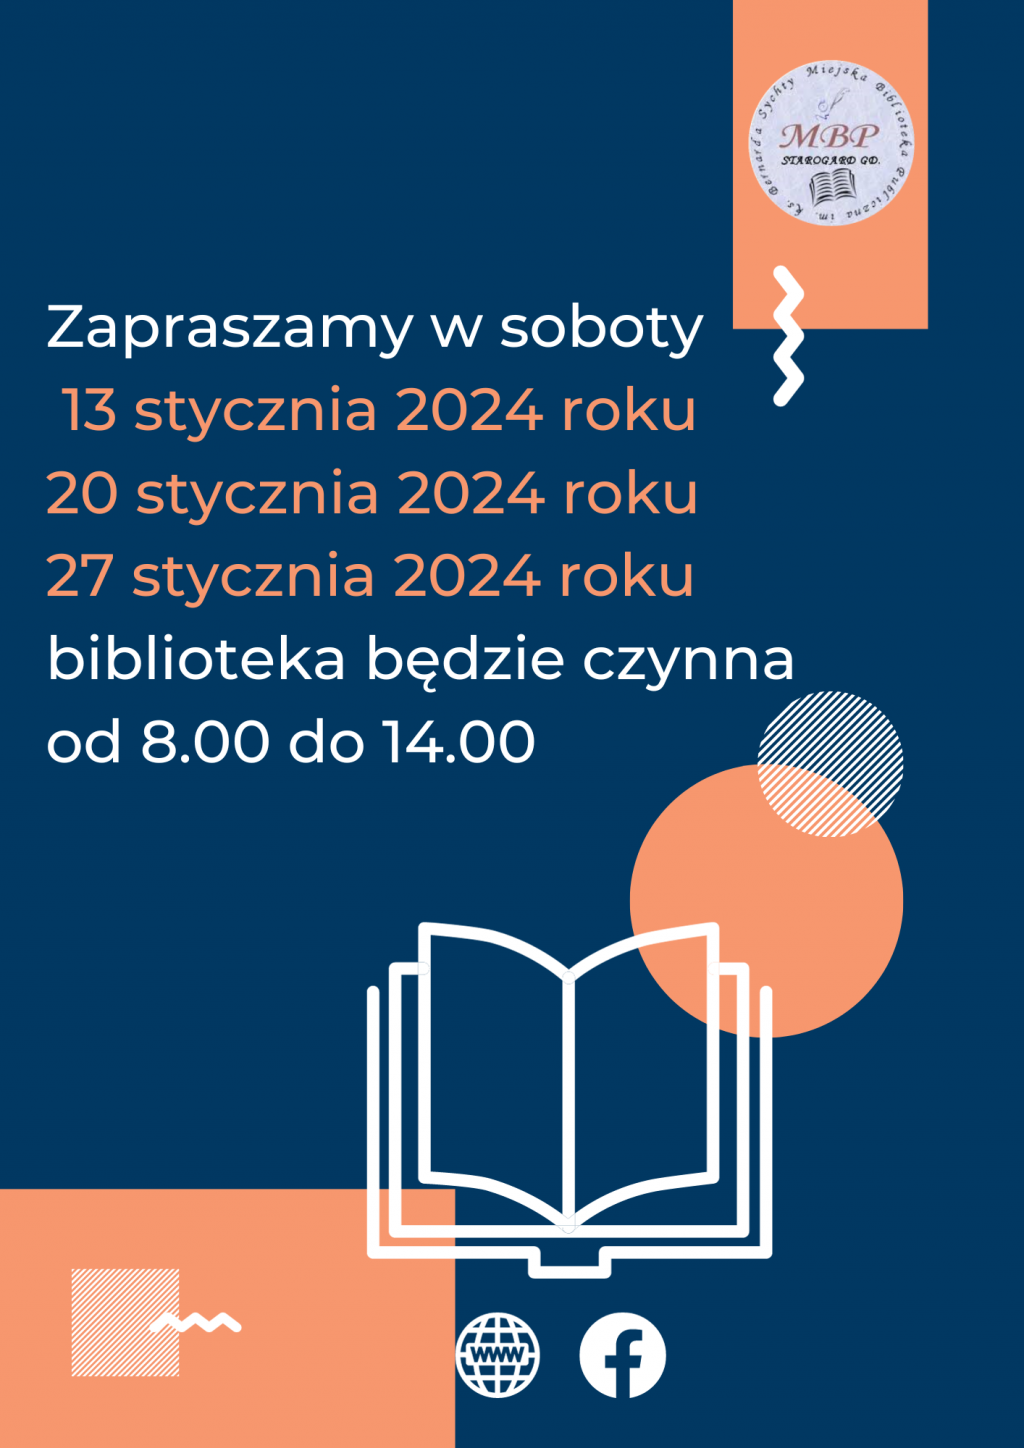 Plakat informujący o pracujących sobotach: 13 stycznia 2024, 20 stycznia 2024 i 27 stycznia 2024 roku, biblioteka będzie czynna od 8.00 do 14.00. Miejska Biblioteka Publiczna w Starogardzie Gdańskim.